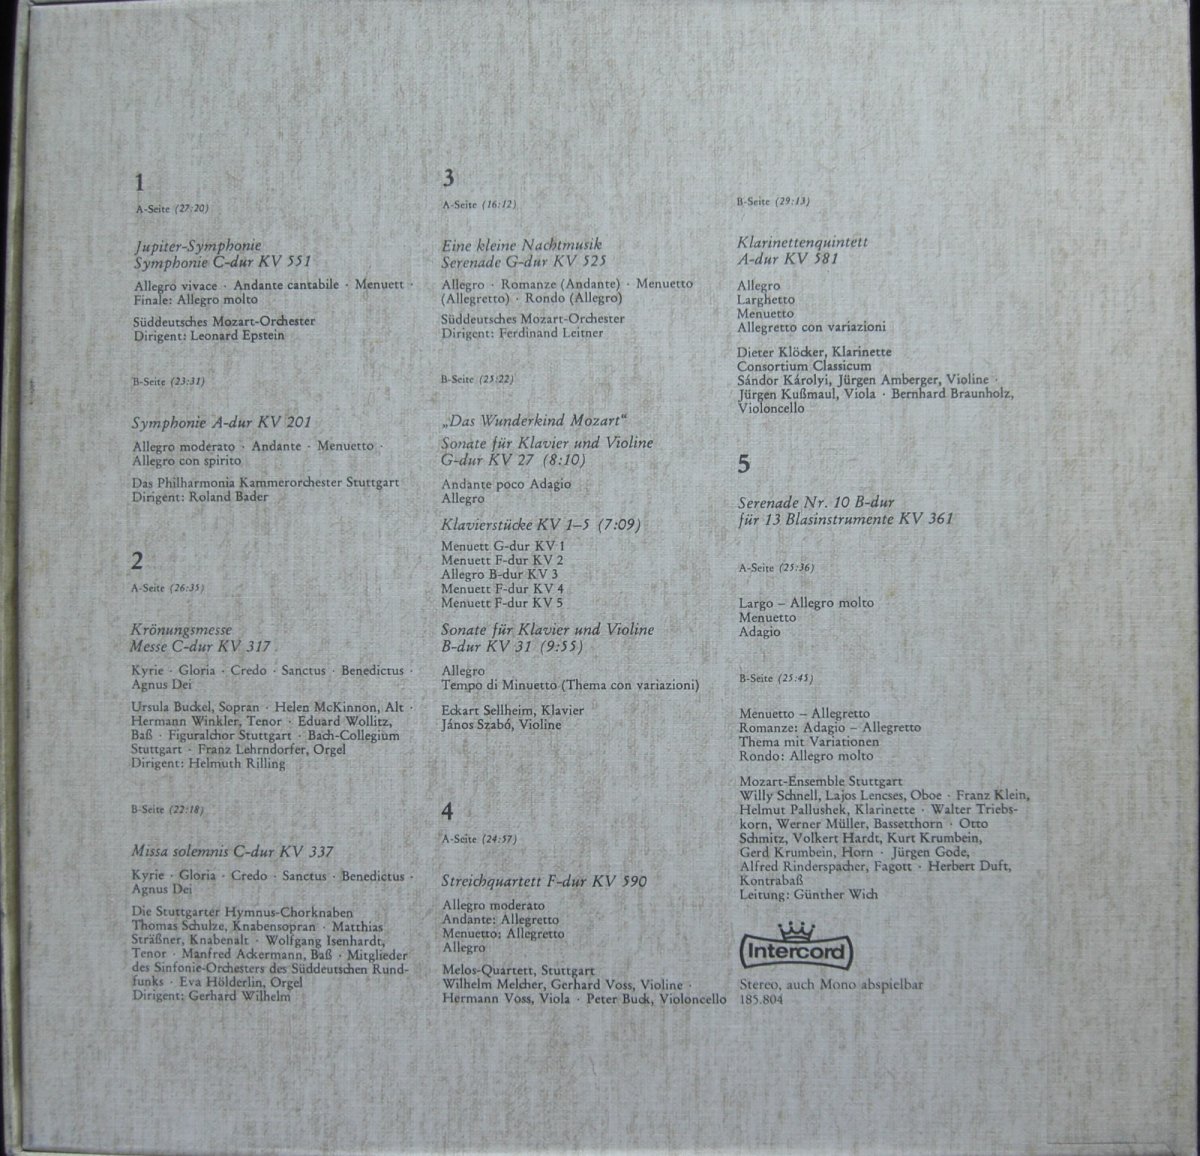 Wolfgang Amadeus Mozart – Symphonien, Serenaden, Kammermusik, Krönungsmesse, Missa Solemnis Und Das Wunderkind Mozart 5xLP box